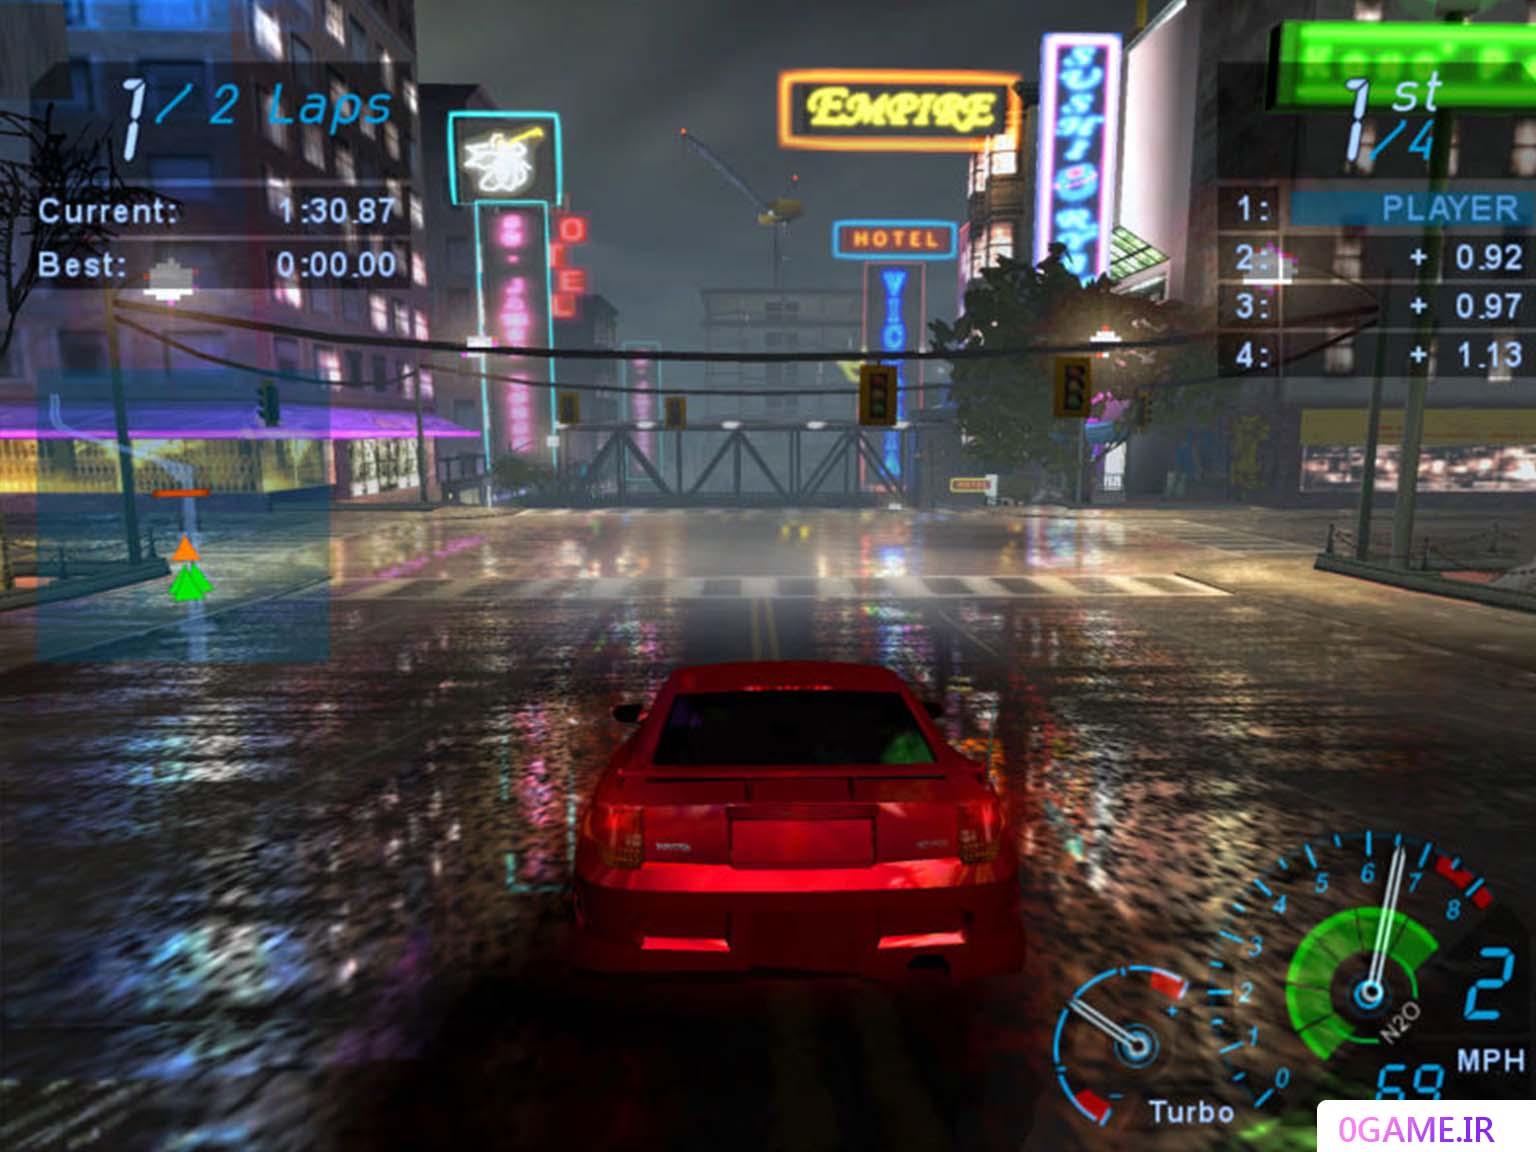 دانلود بازی نید فور اسپید اندر گرند 1 (Need for Speed: Underground) نسخه کامل برای کامپیوتر